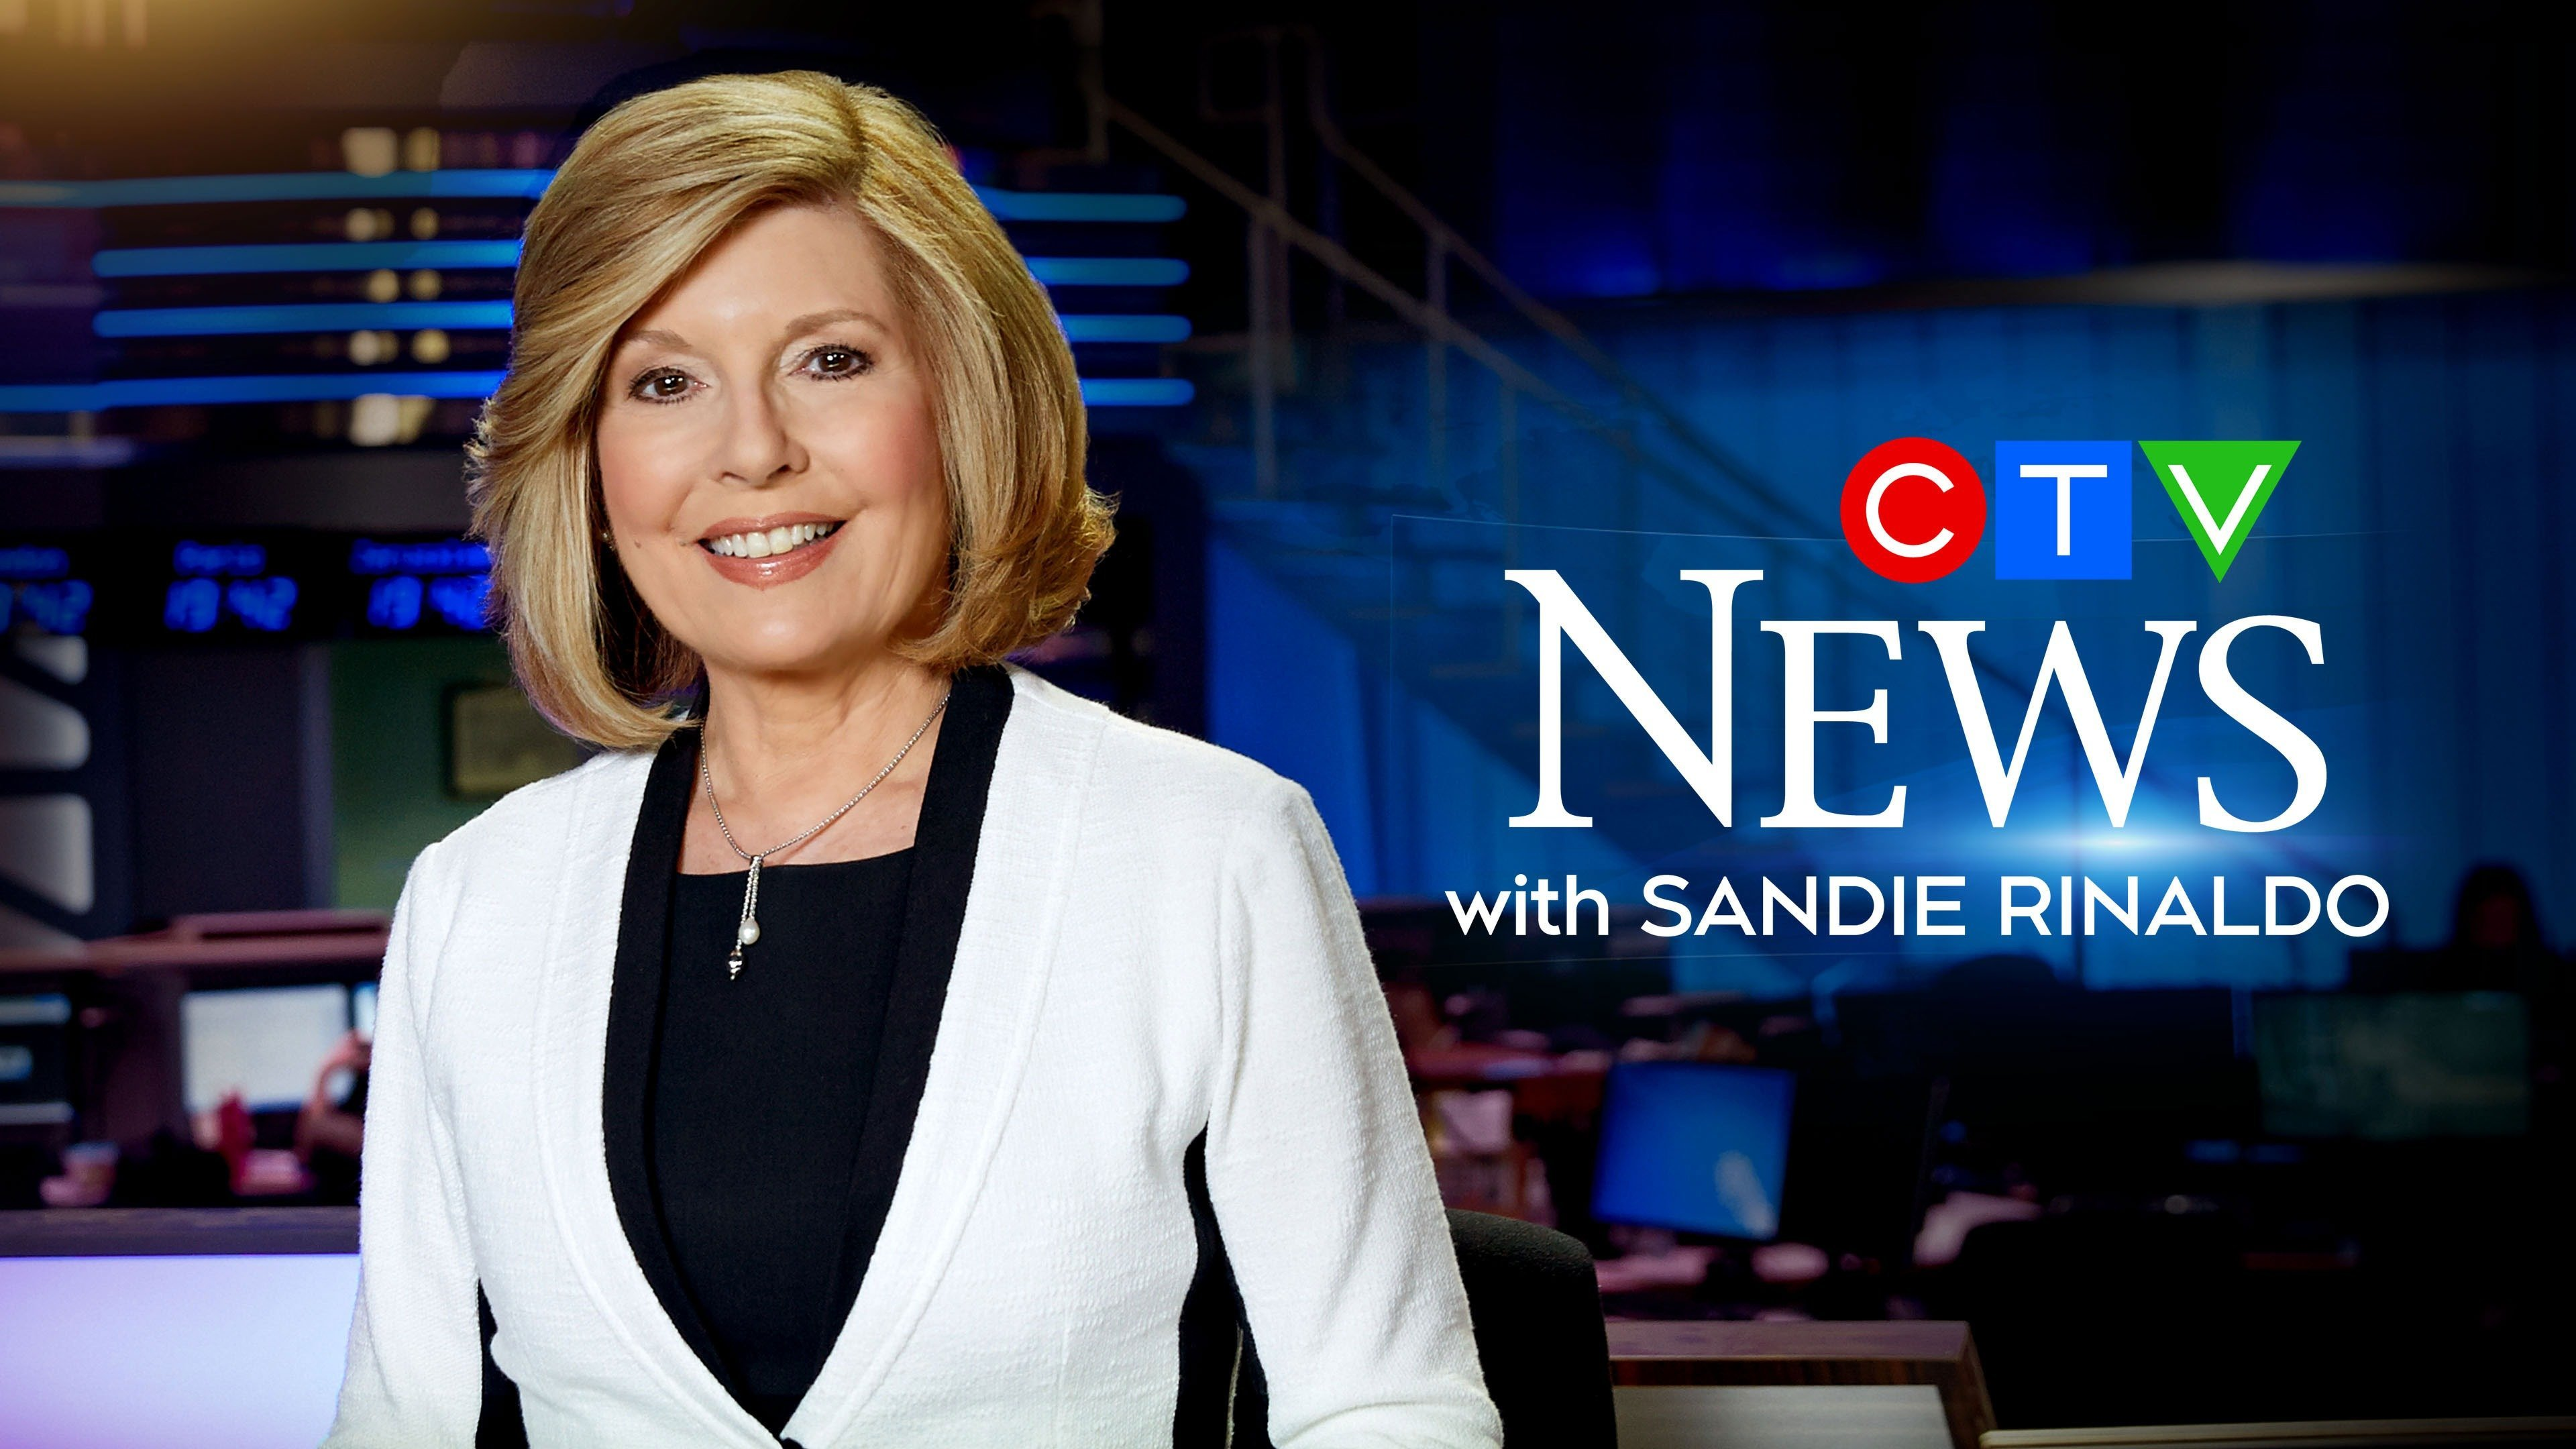 CTV National News With Sandie Rinaldo